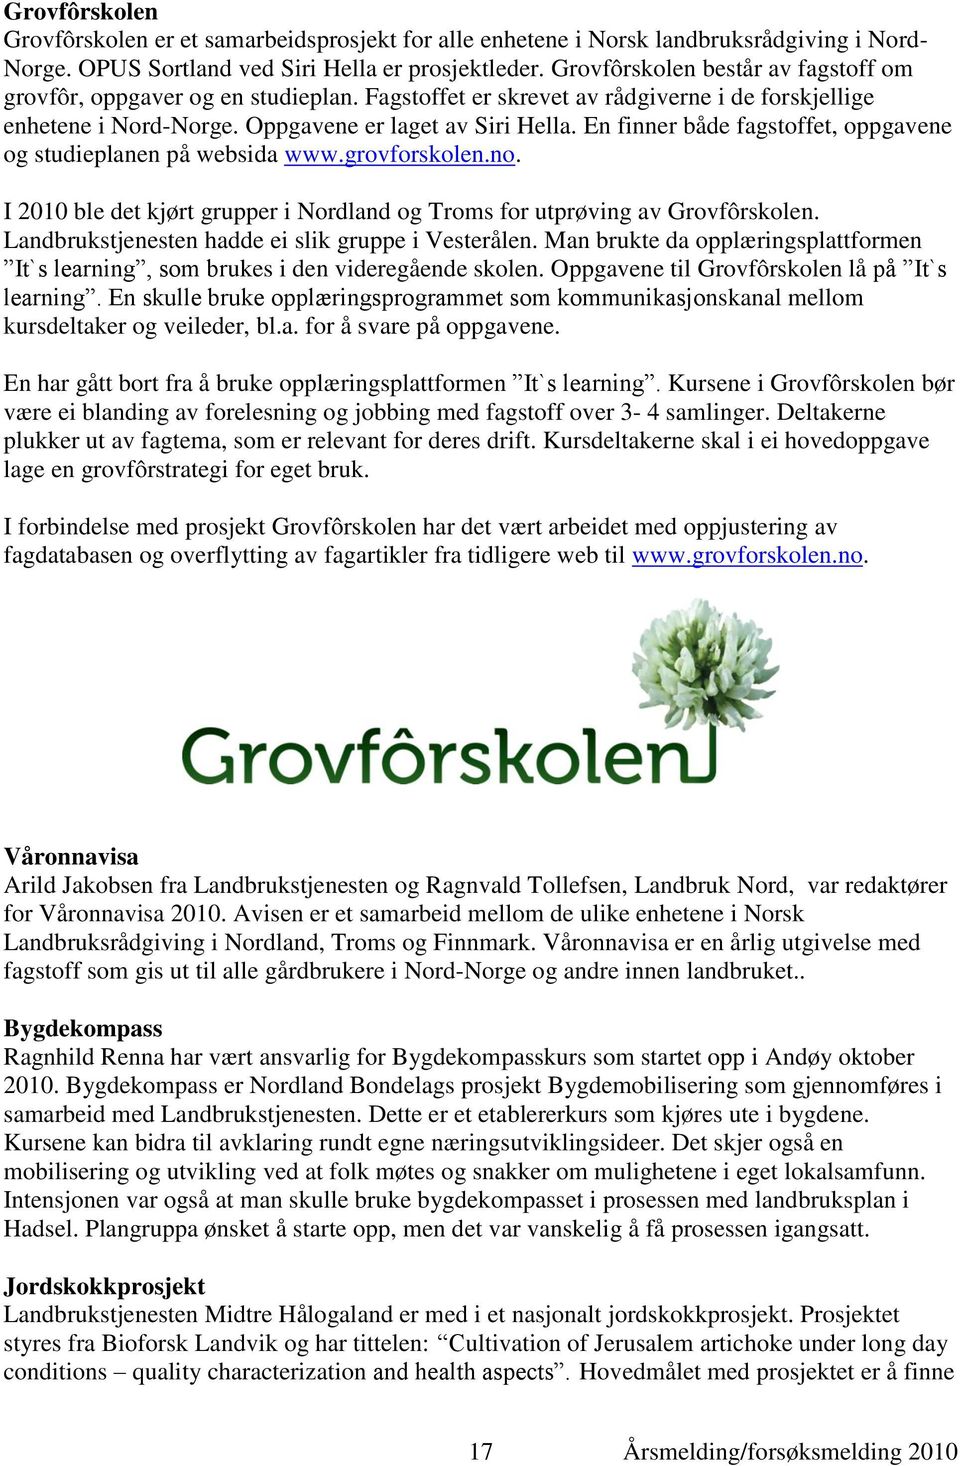 En finner både fagstoffet, oppgavene og studieplanen på websida www.grovforskolen.no. I 2010 ble det kjørt grupper i Nordland og Troms for utprøving av Grovfôrskolen.